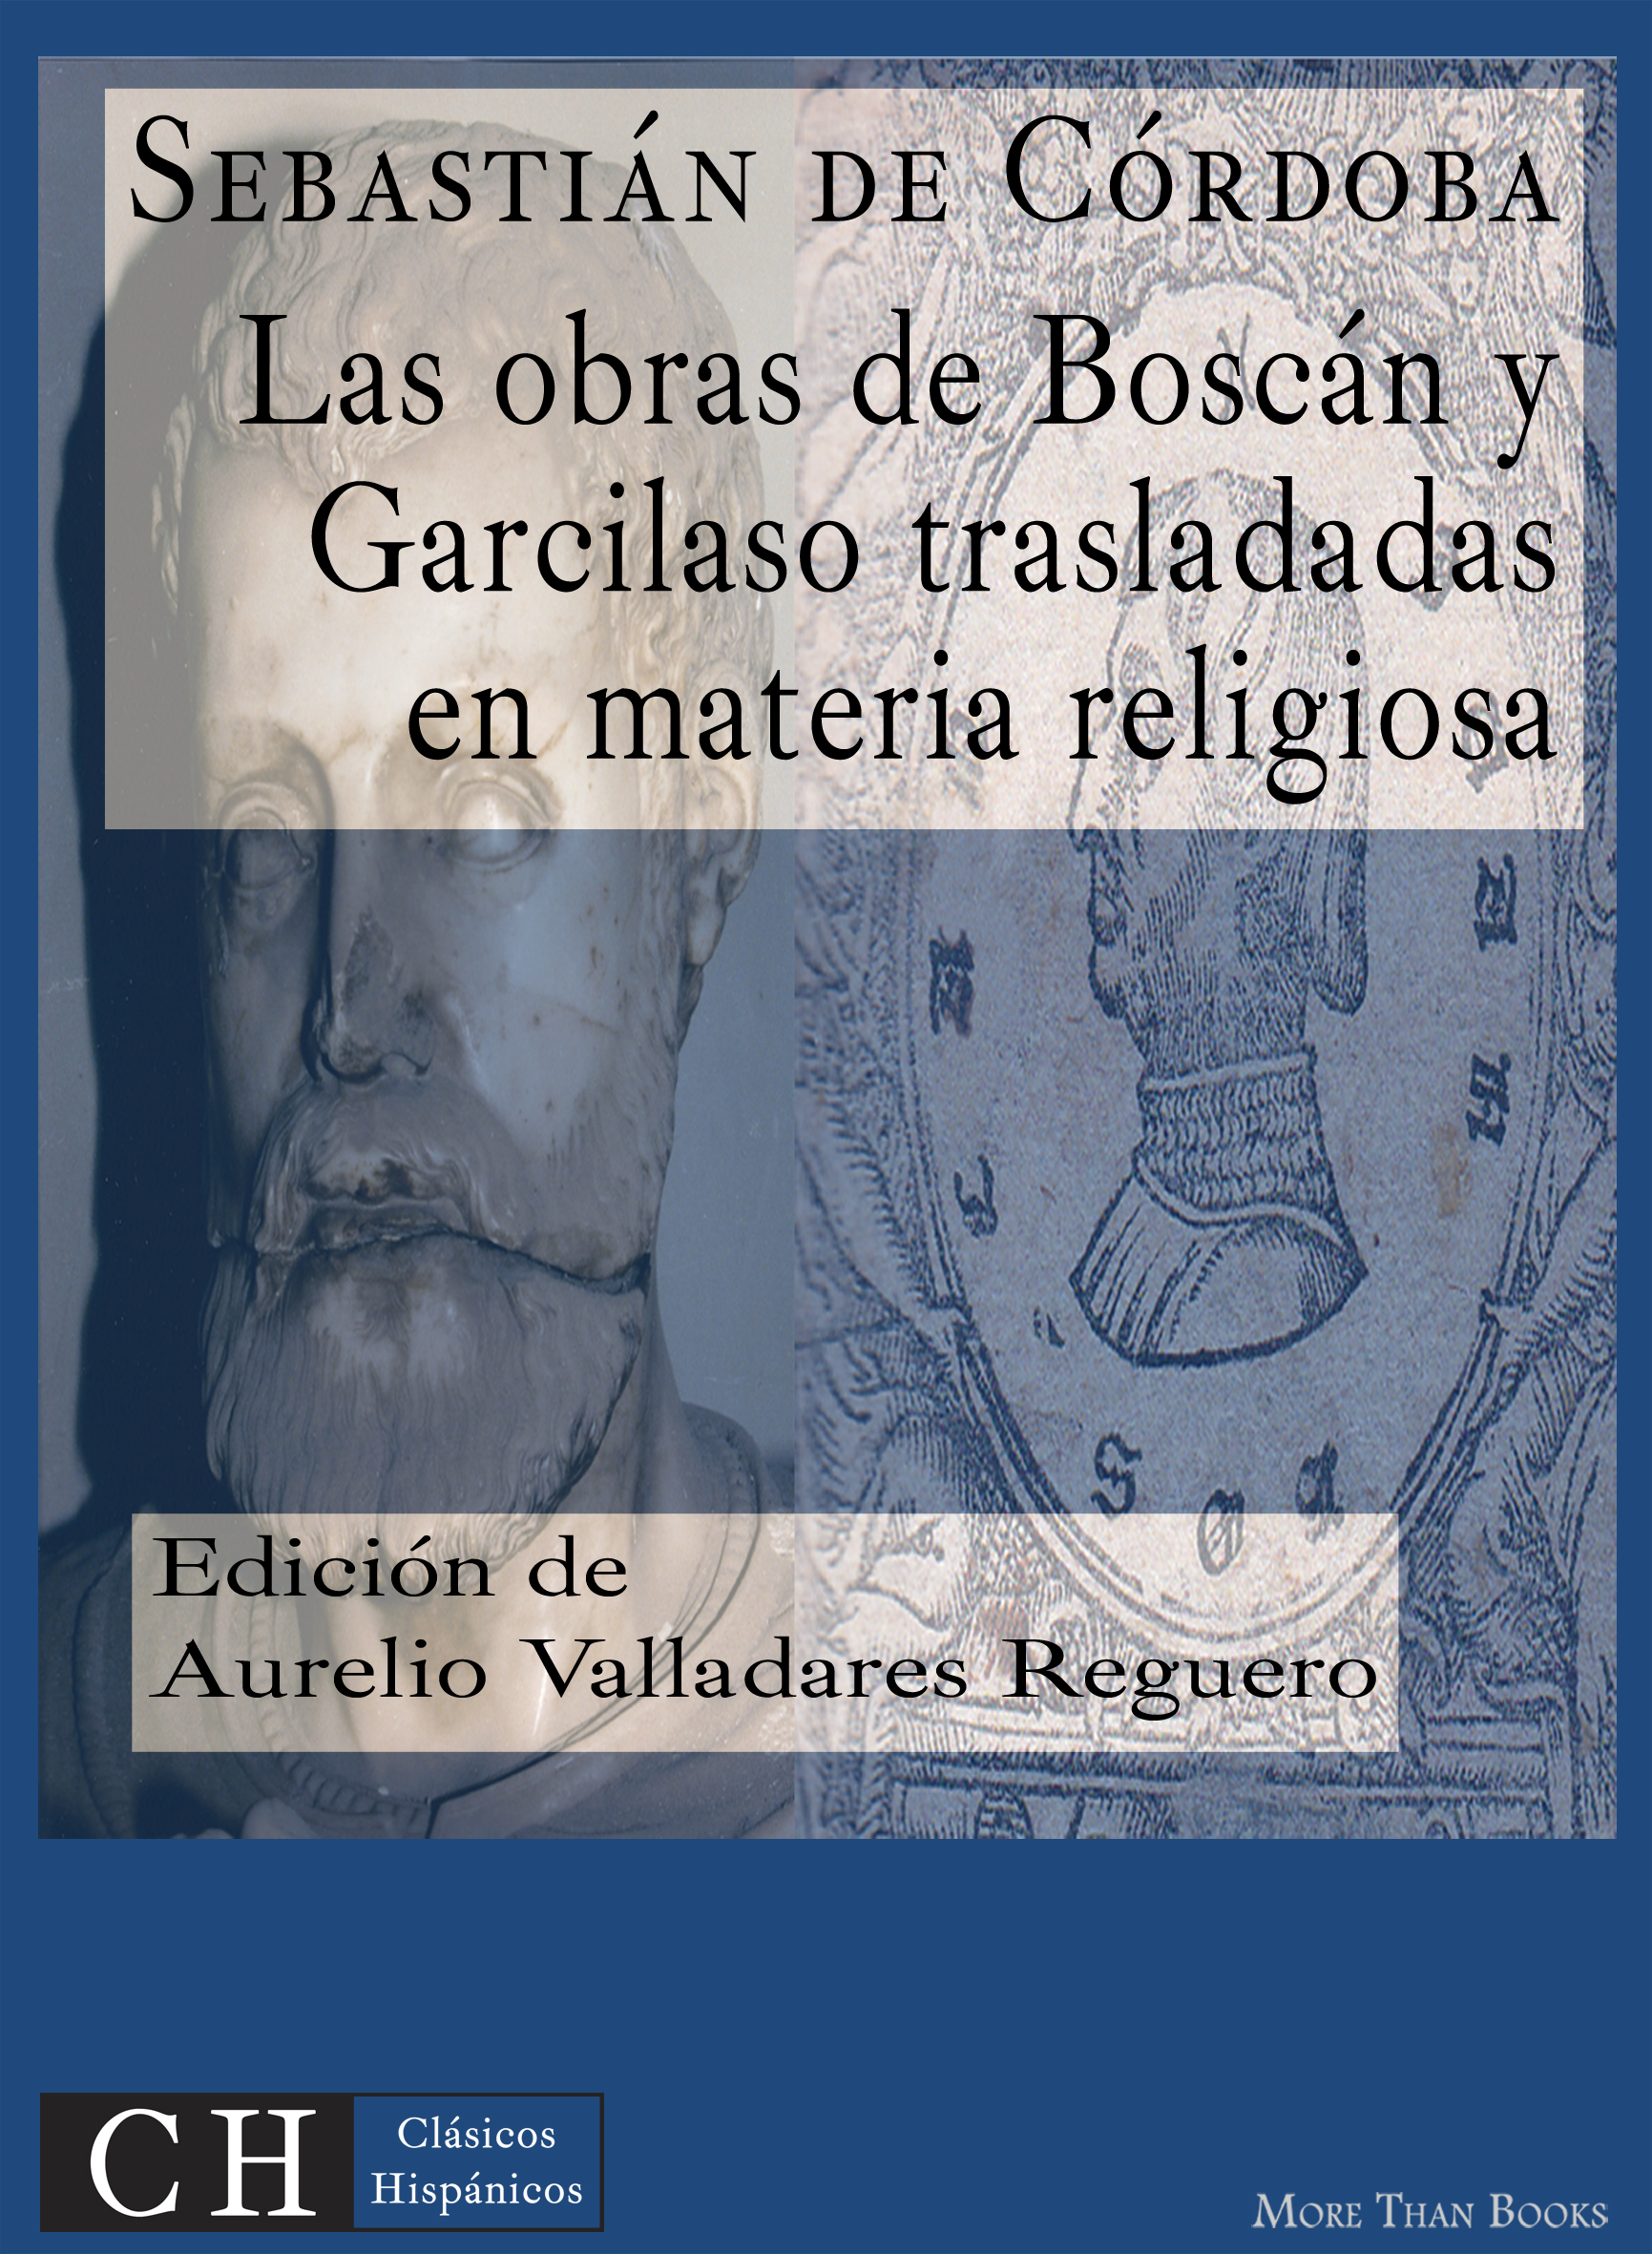 Imagen de portada del libro Las obras de Boscán y Garcilaso trasladadas en materias cristianas y religiosas